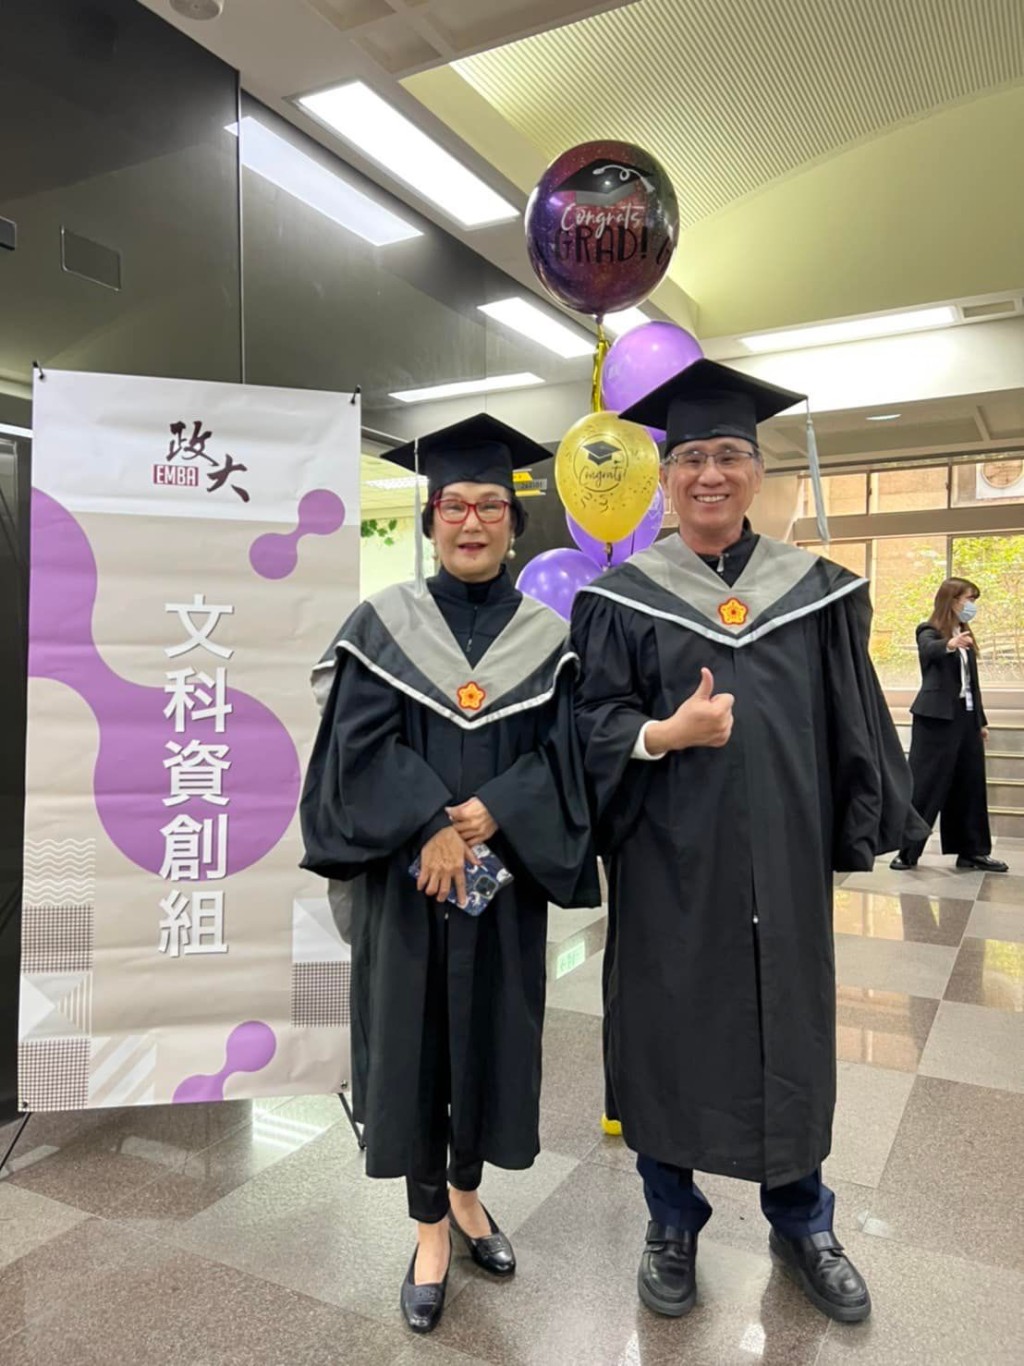 胡锦曾向传媒透露，当年乳癌复发时被告知剩下3年命，她即报读台湾国立政治大学的EMBA，并于两年内完成课程，一圆大学毕业梦。